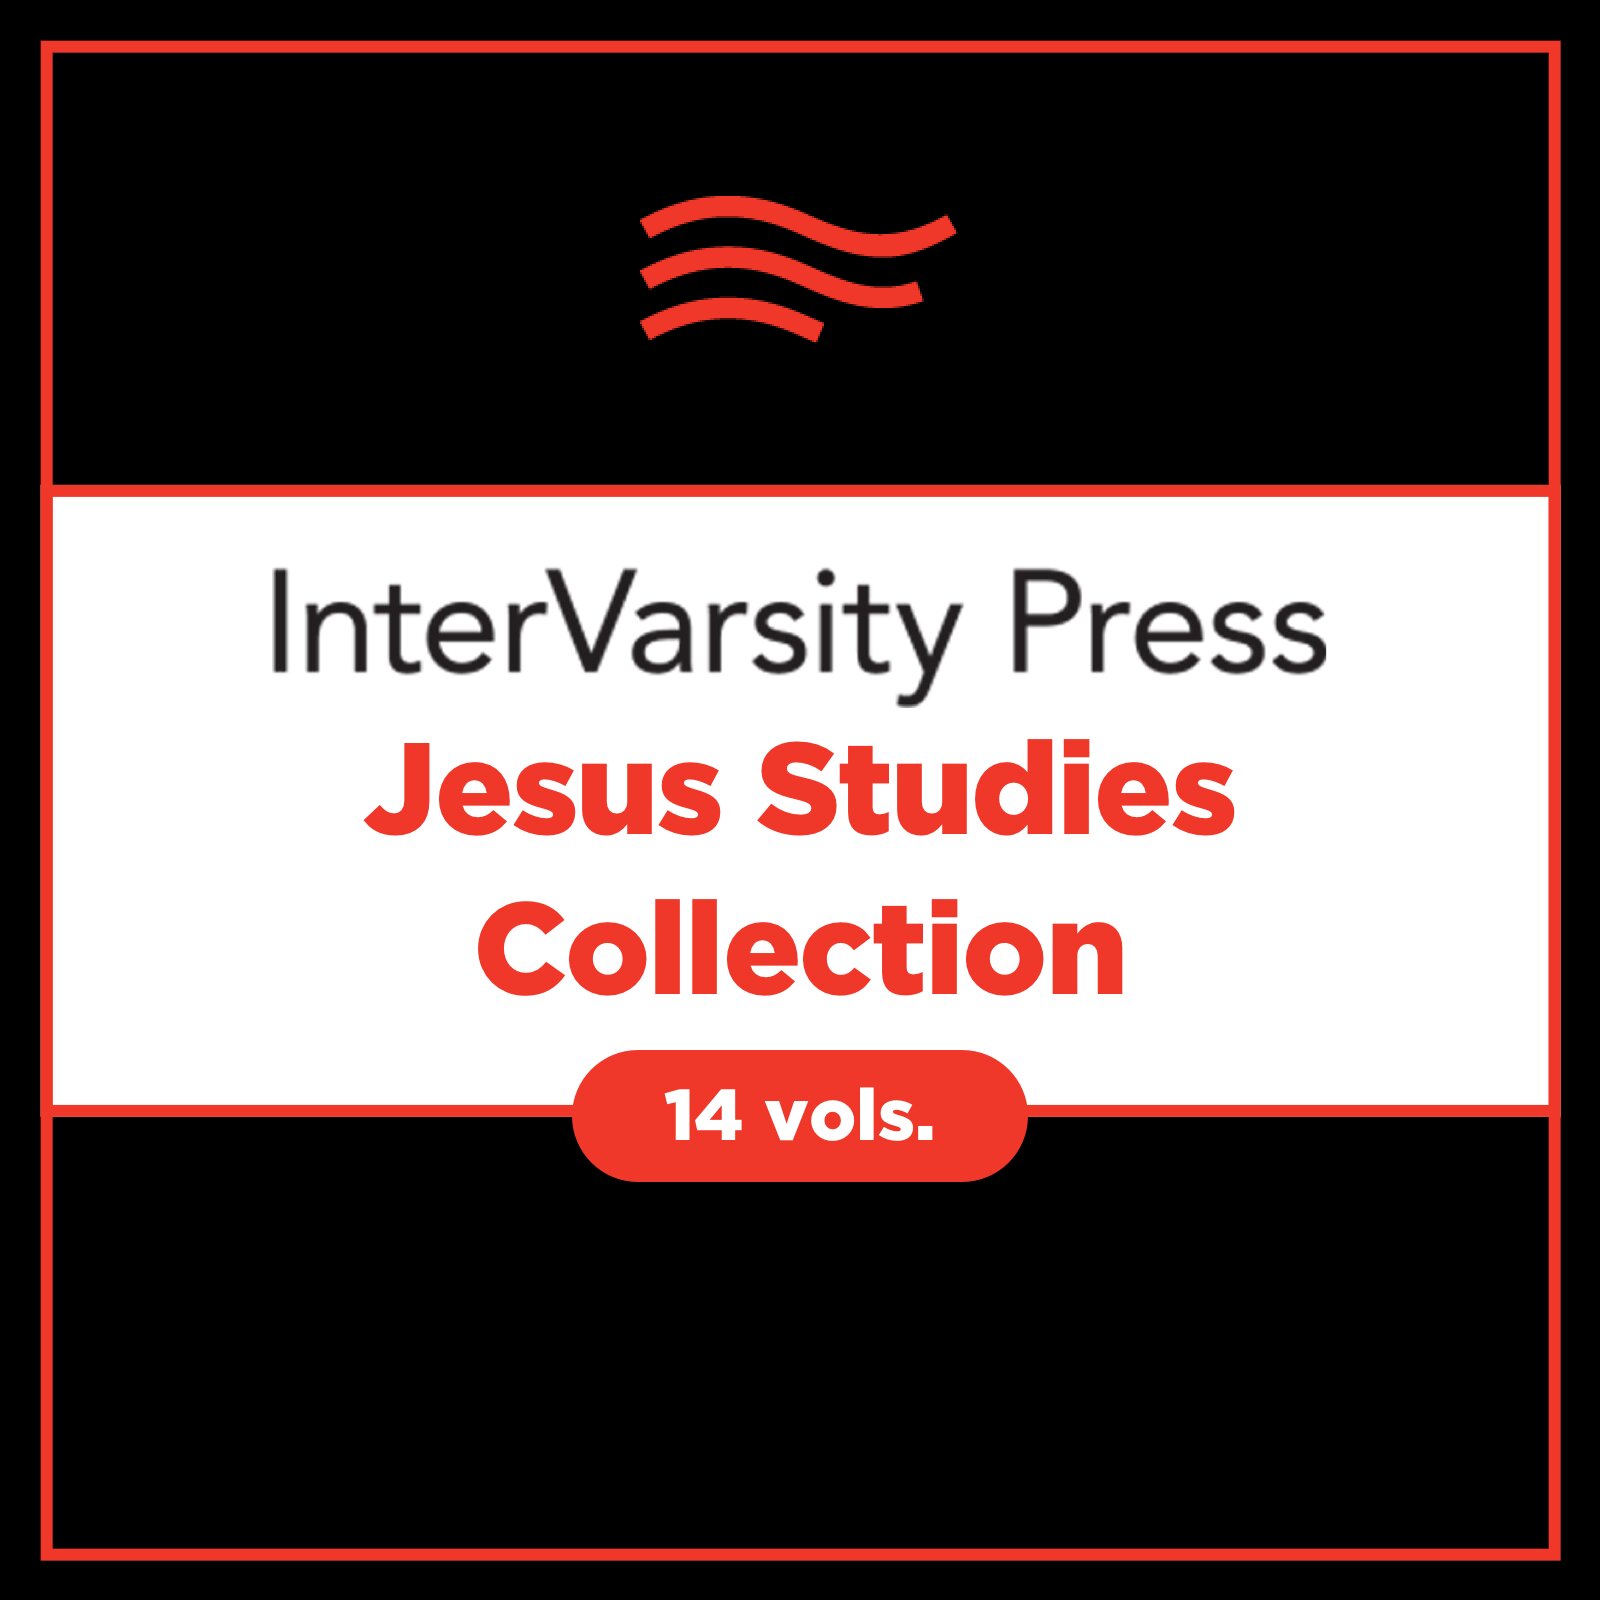 IVP Jesus Studies Collection (14 vols.)